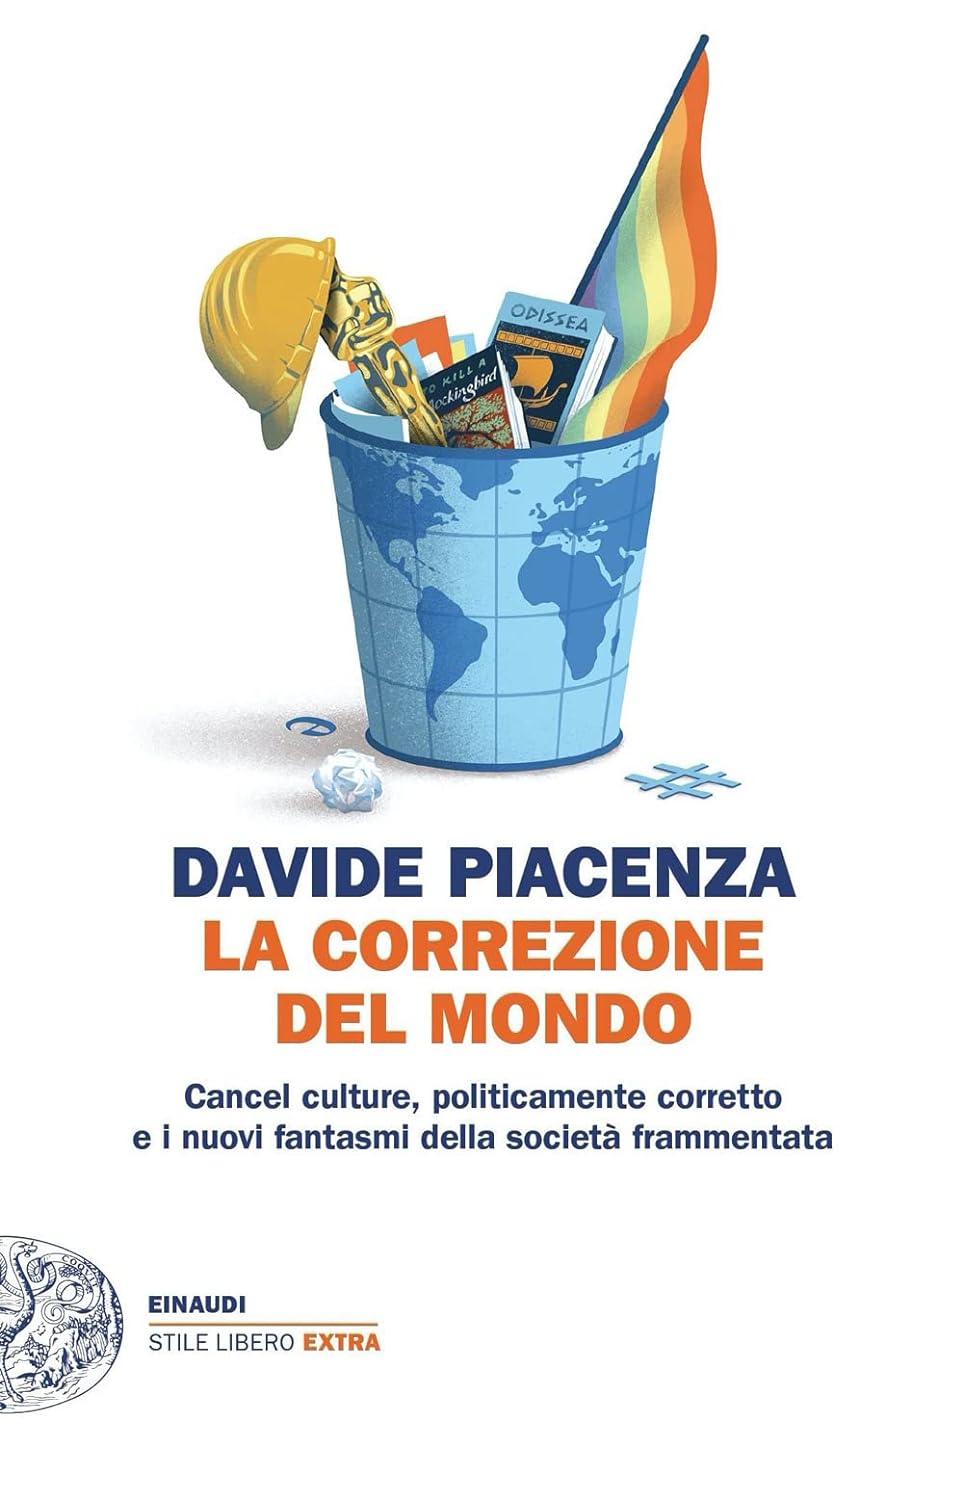 Davide Piacenza: La correzione del mondo (Italiano language, Einaudi)